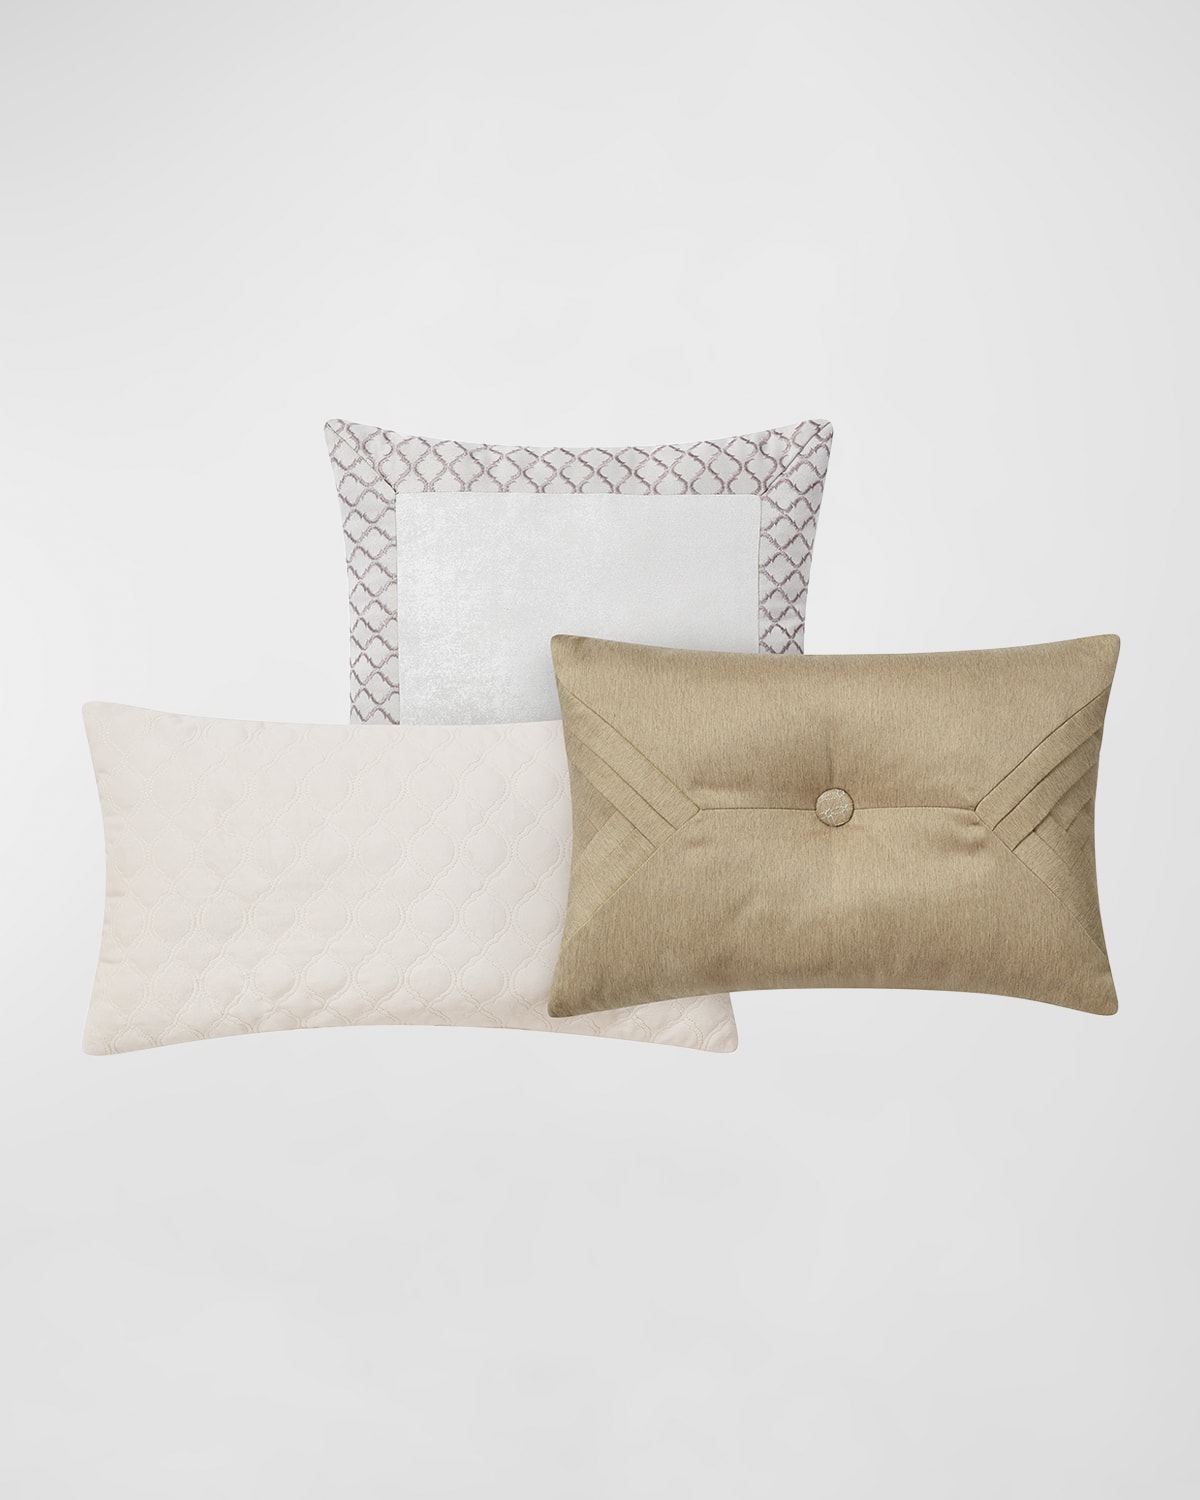 Maritana Decorative Pillows, Set of 3